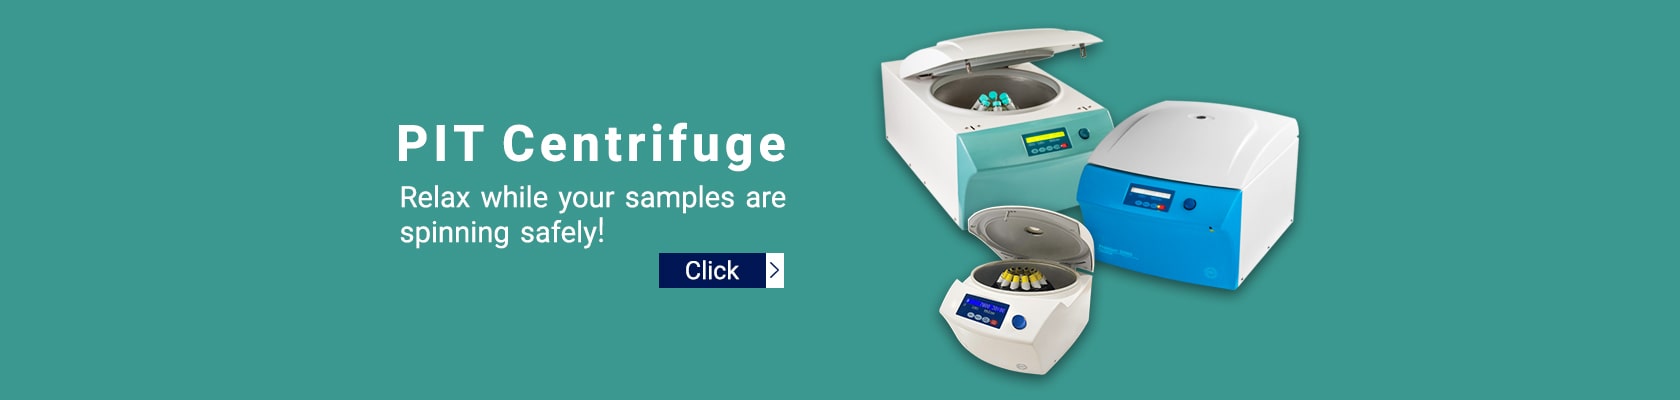 centrifuge banner desktop